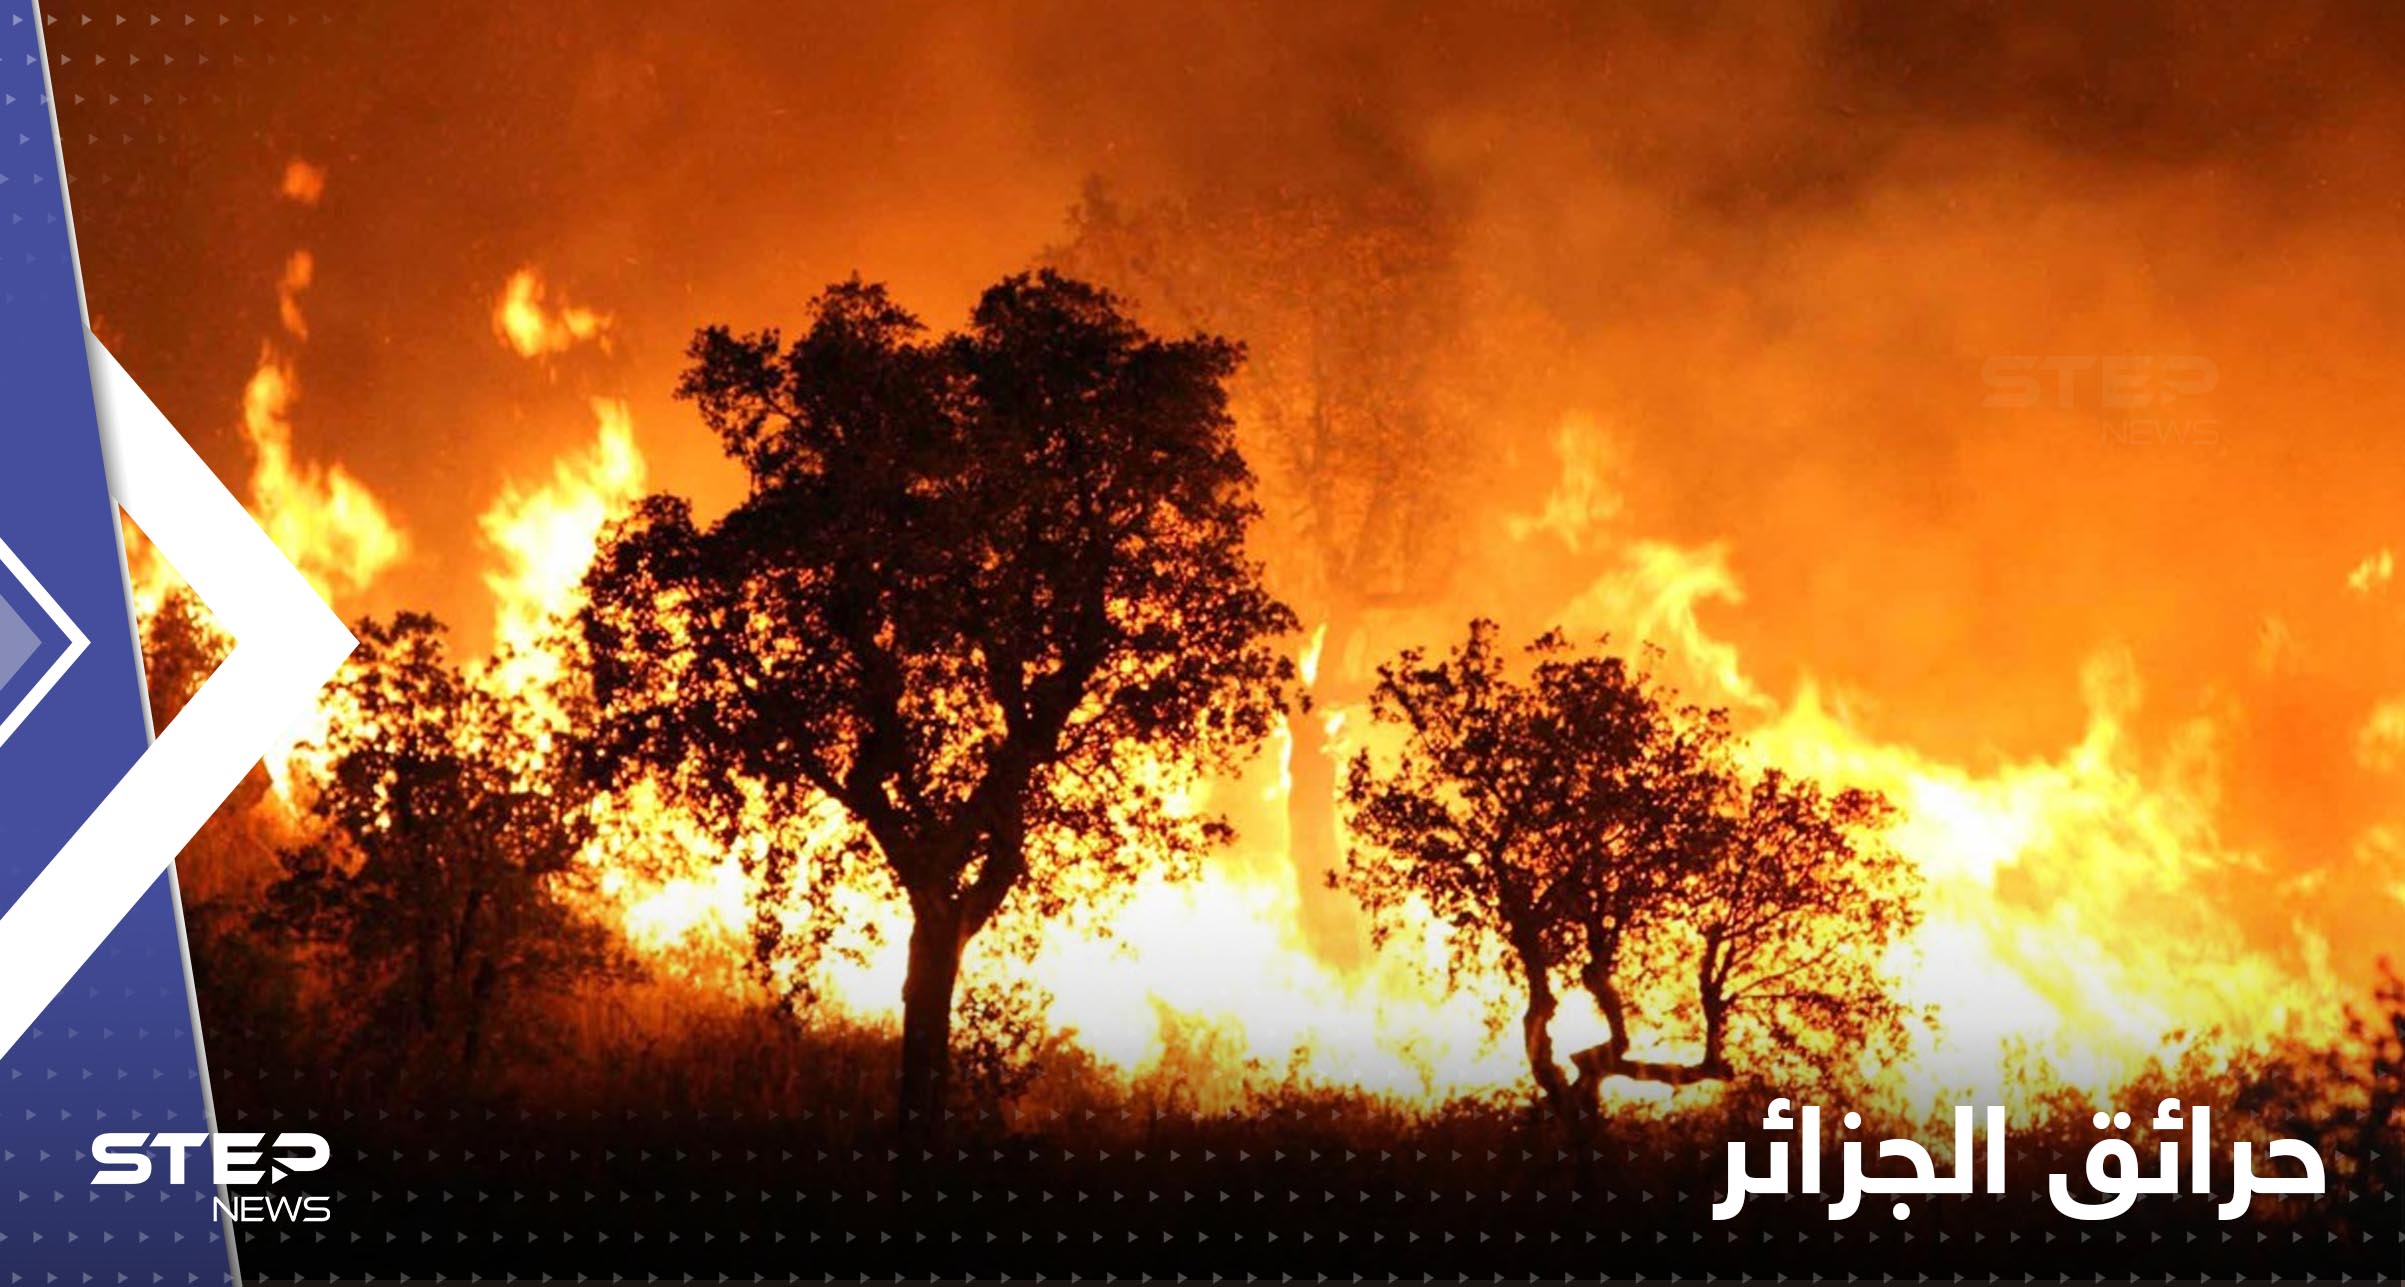 الجزائر.. ضبط 3 أشخاص أضرموا النار عمداً في محاصيل زراعية